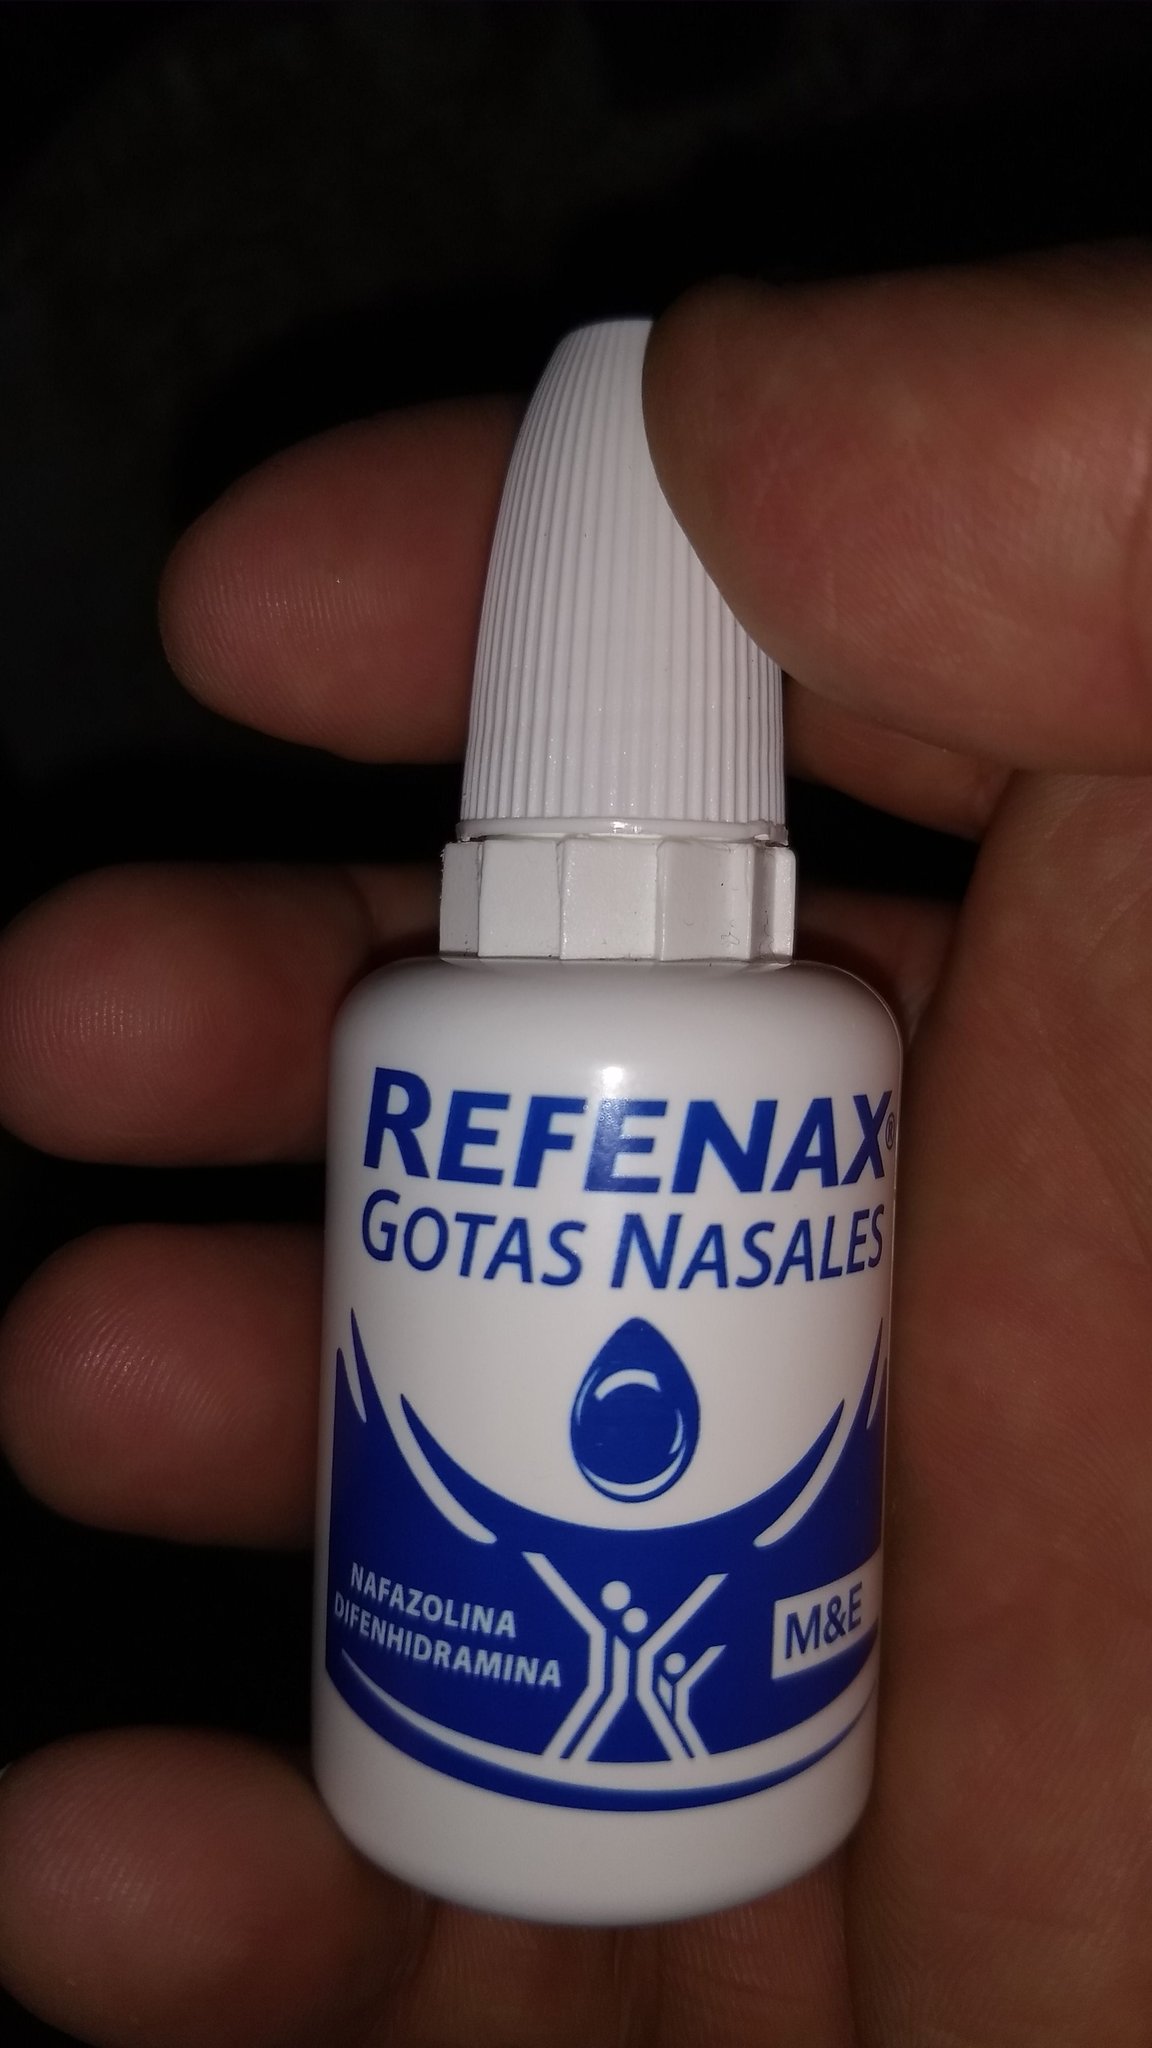 REFENAX Gotas nasales